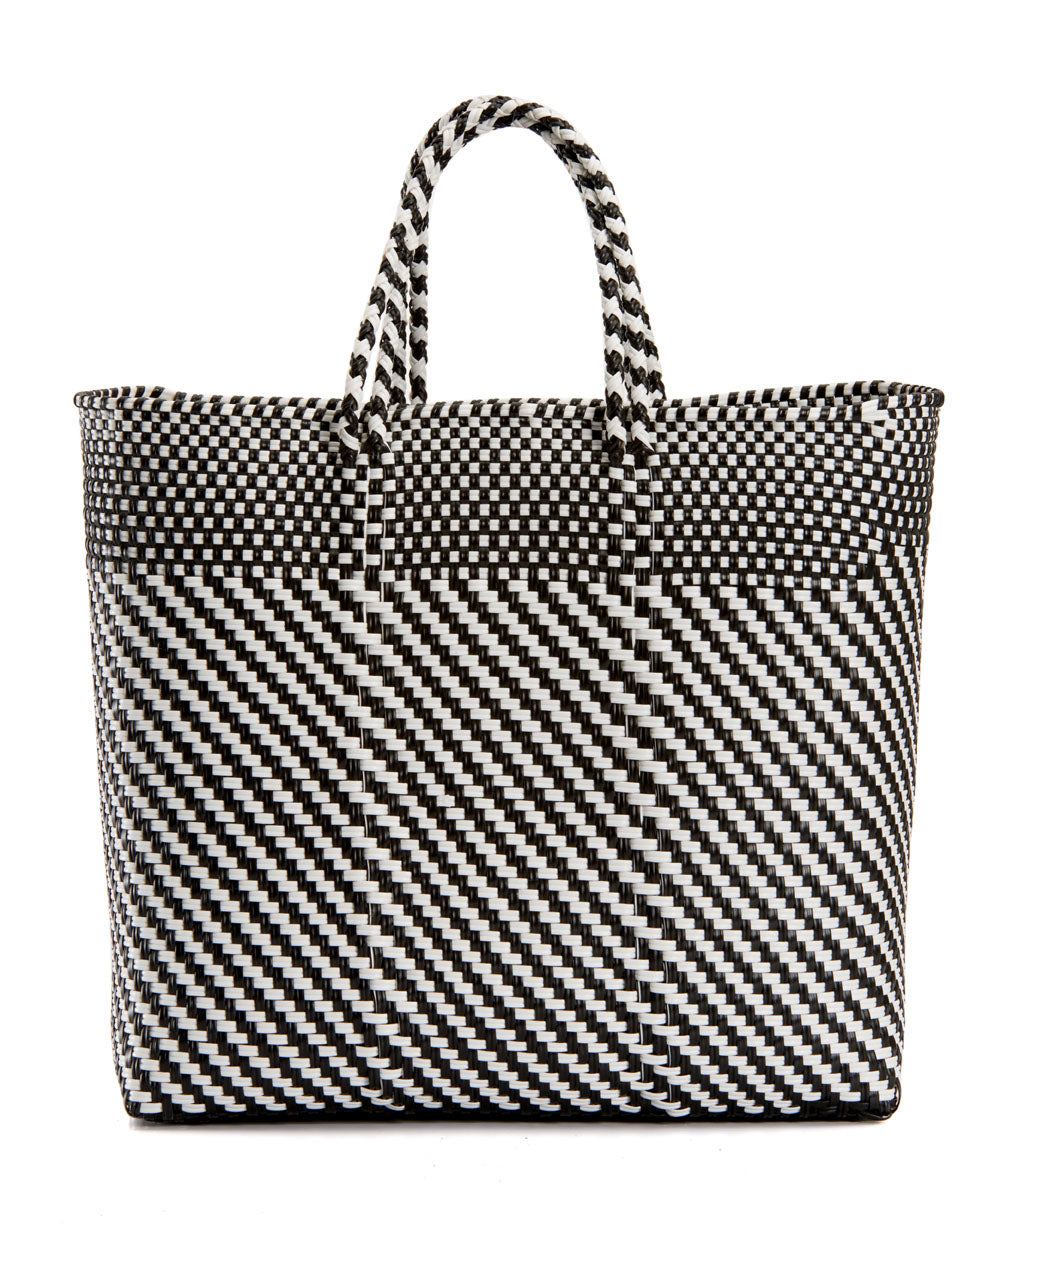 Oaxaca bag, Black & White